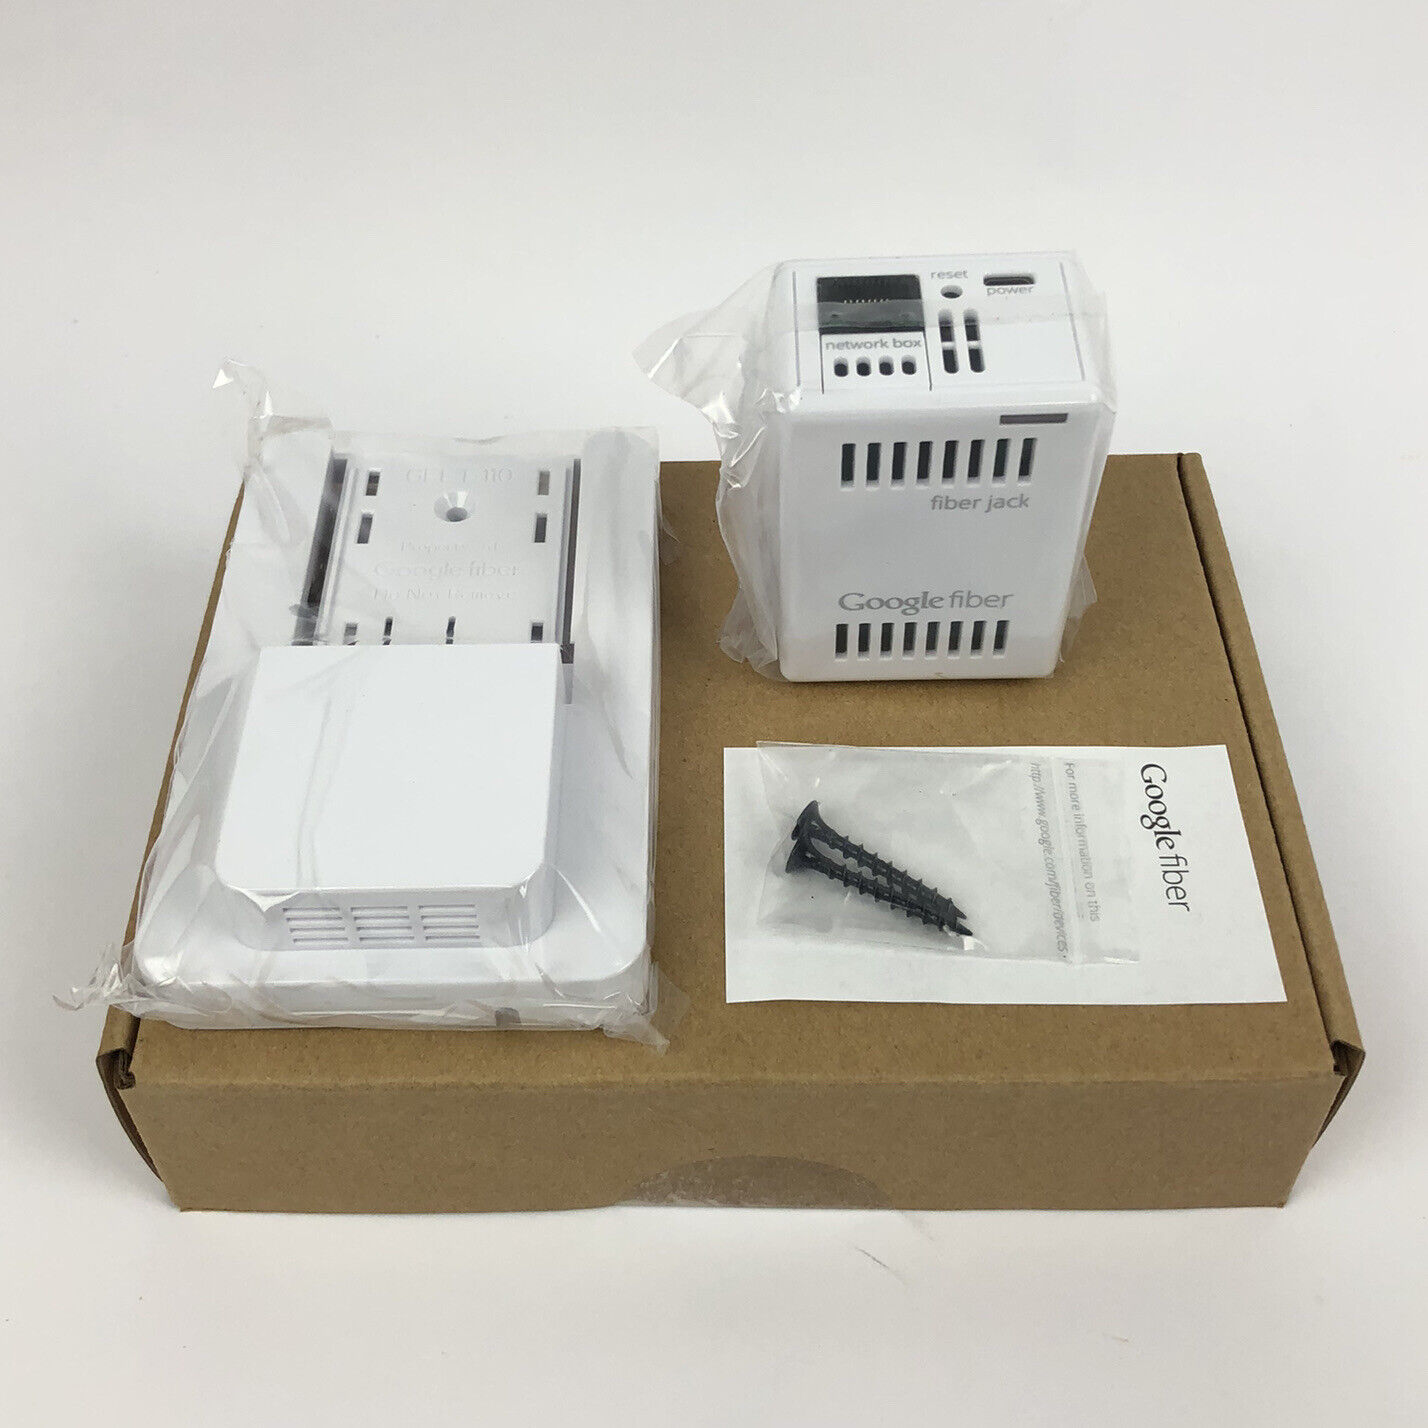 2 Google Fiber Jacks & Base GFLT110 NEW IN BOX SEALED From Manufacturer Google Fiber 86003010-07